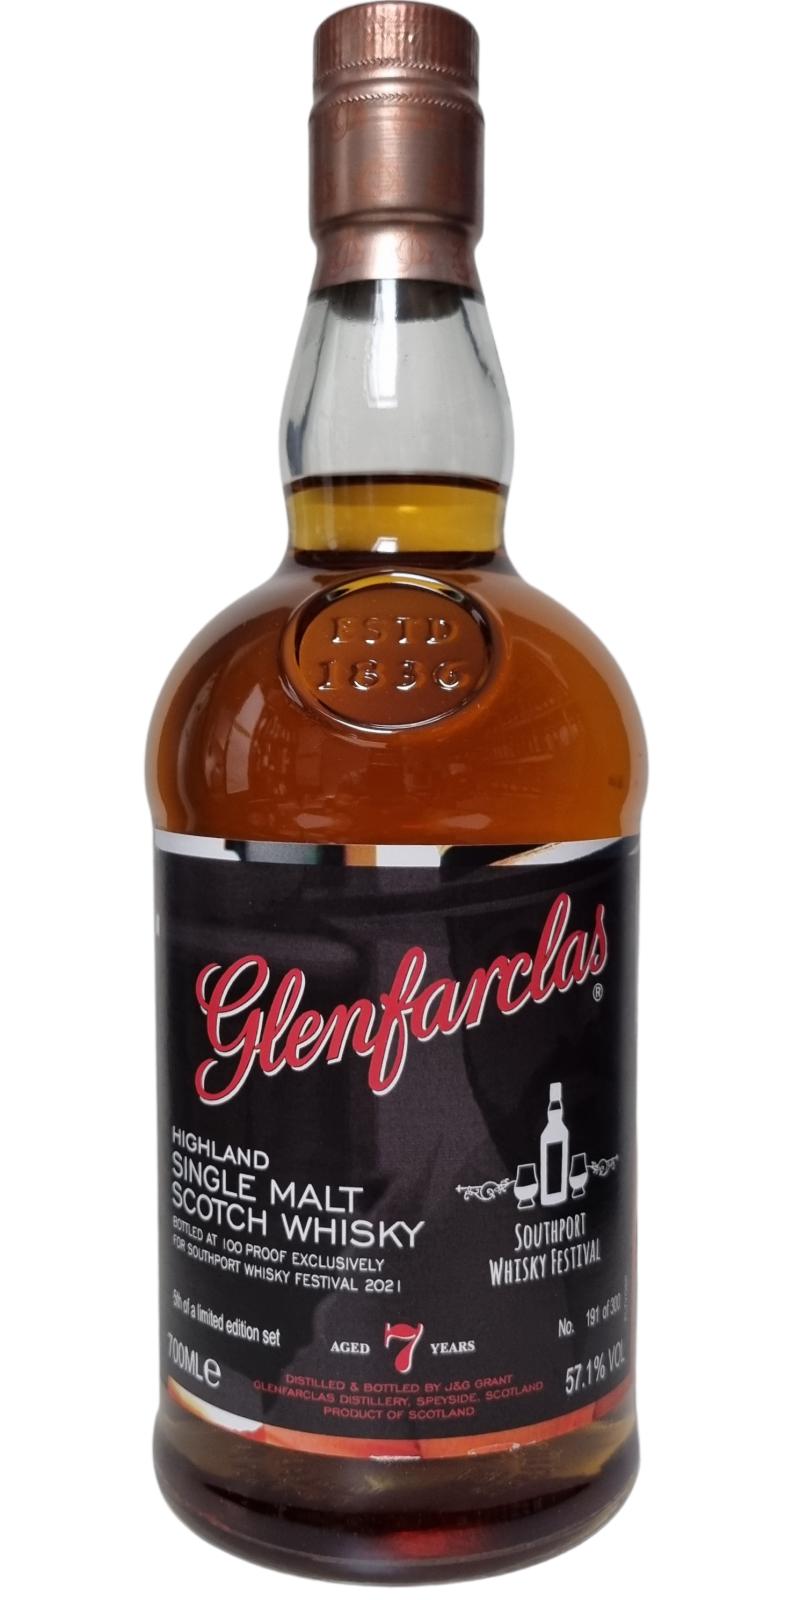 Glenfarclas 7yo Southport Whisky Festival Exclusive 57.1% 700ml